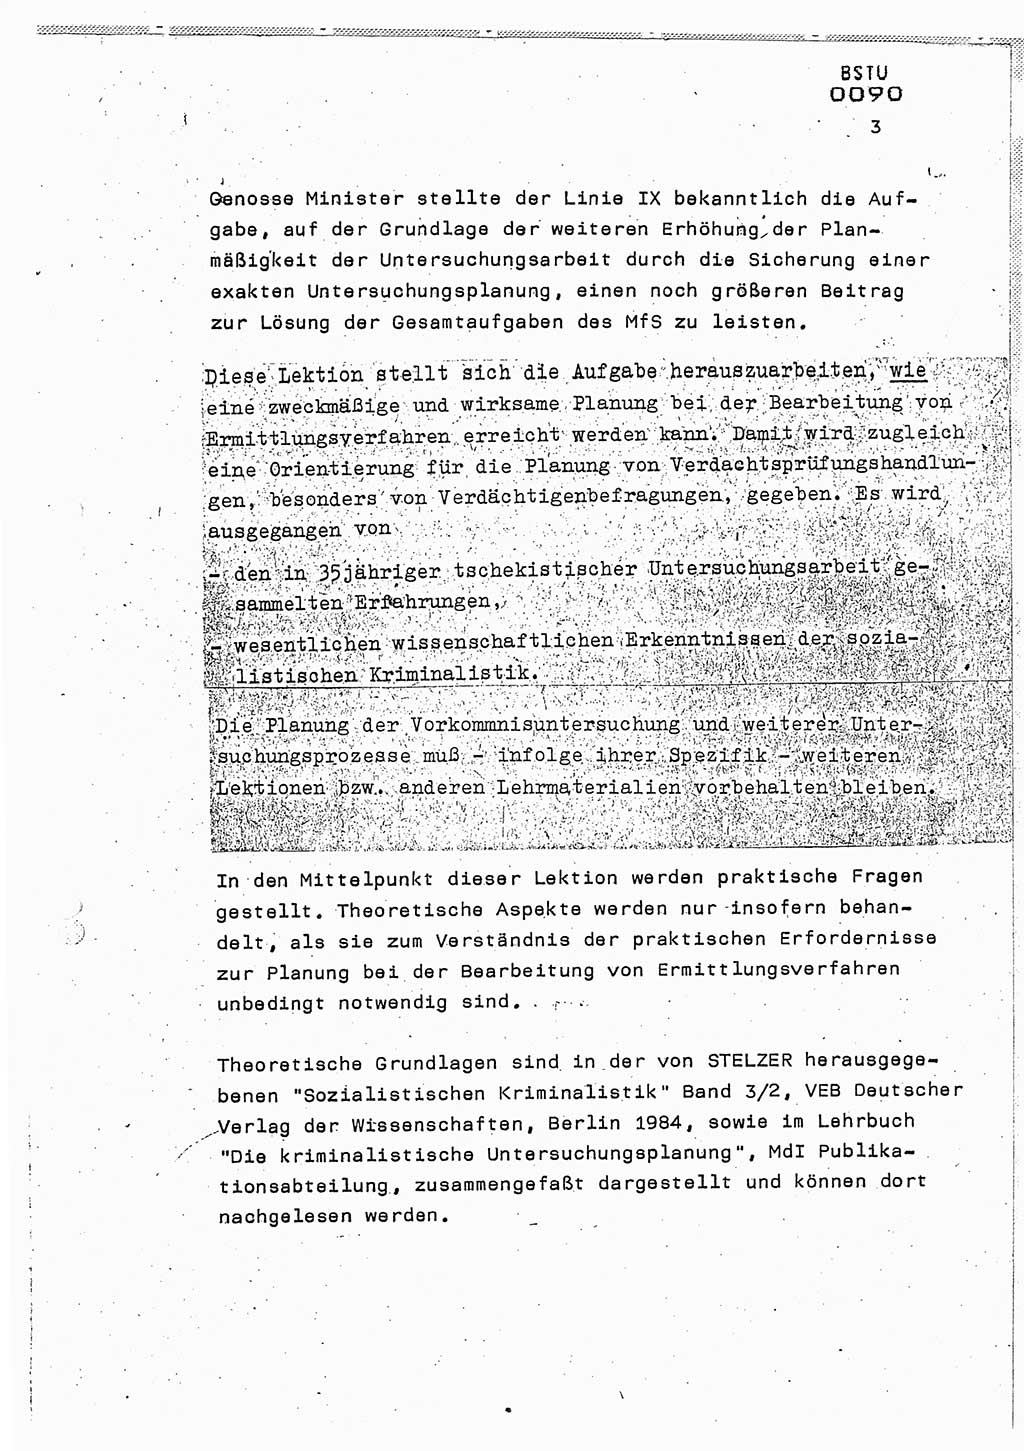 Lektion Ministerium für Staatssicherheit (MfS) [Deutsche Demokratische Republik (DDR)], Hauptabteilung (HA) Ⅸ, Berlin 1987, Seite 3 (Lekt. Pln. Bearb. EV MfS DDR HA Ⅸ /87 1987, S. 3)